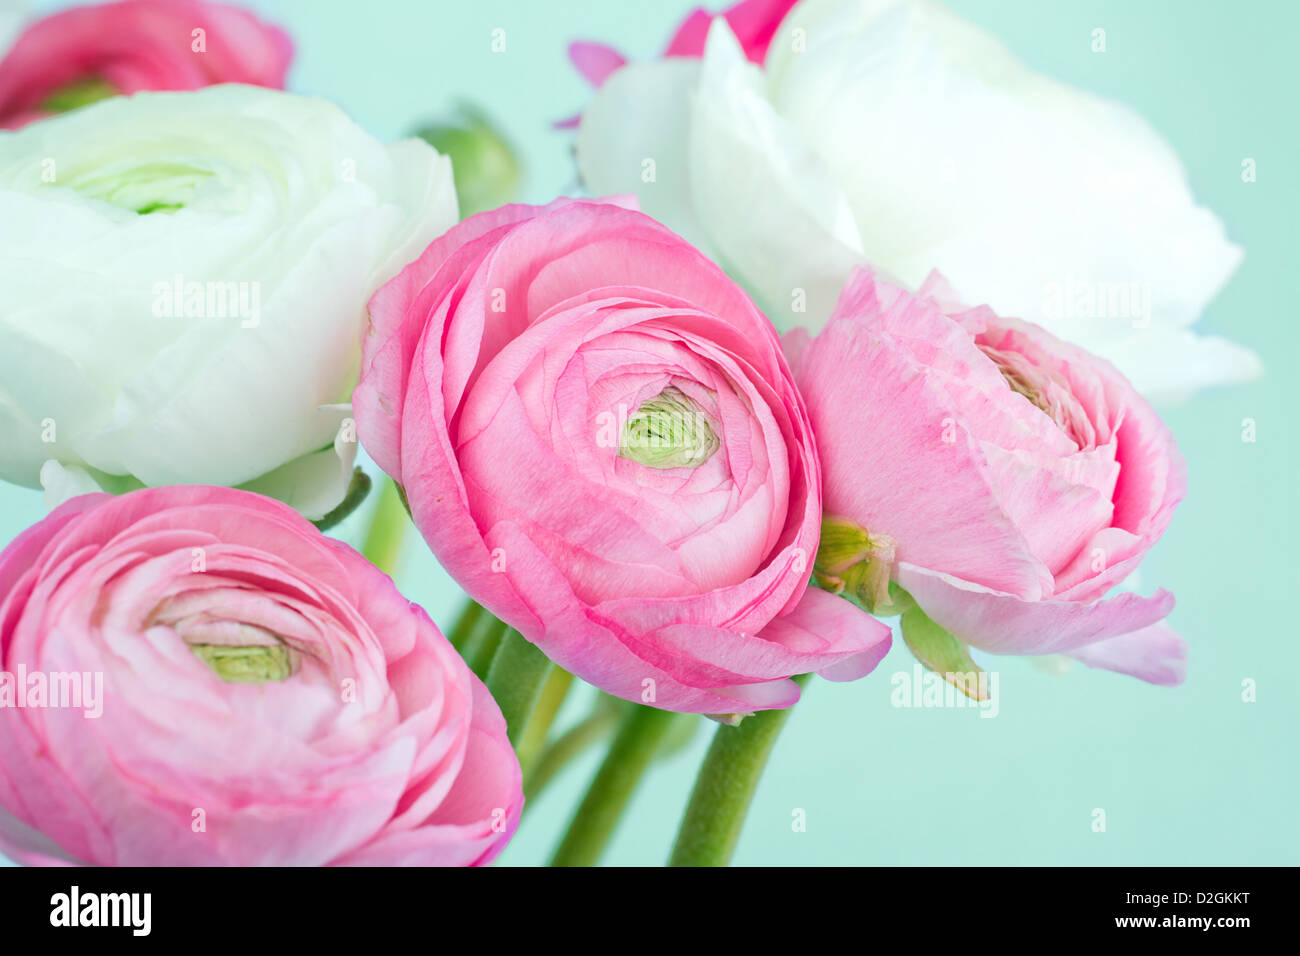 Bouquet de renoncules roses et blanches sur fond bleu clair Photo Stock -  Alamy